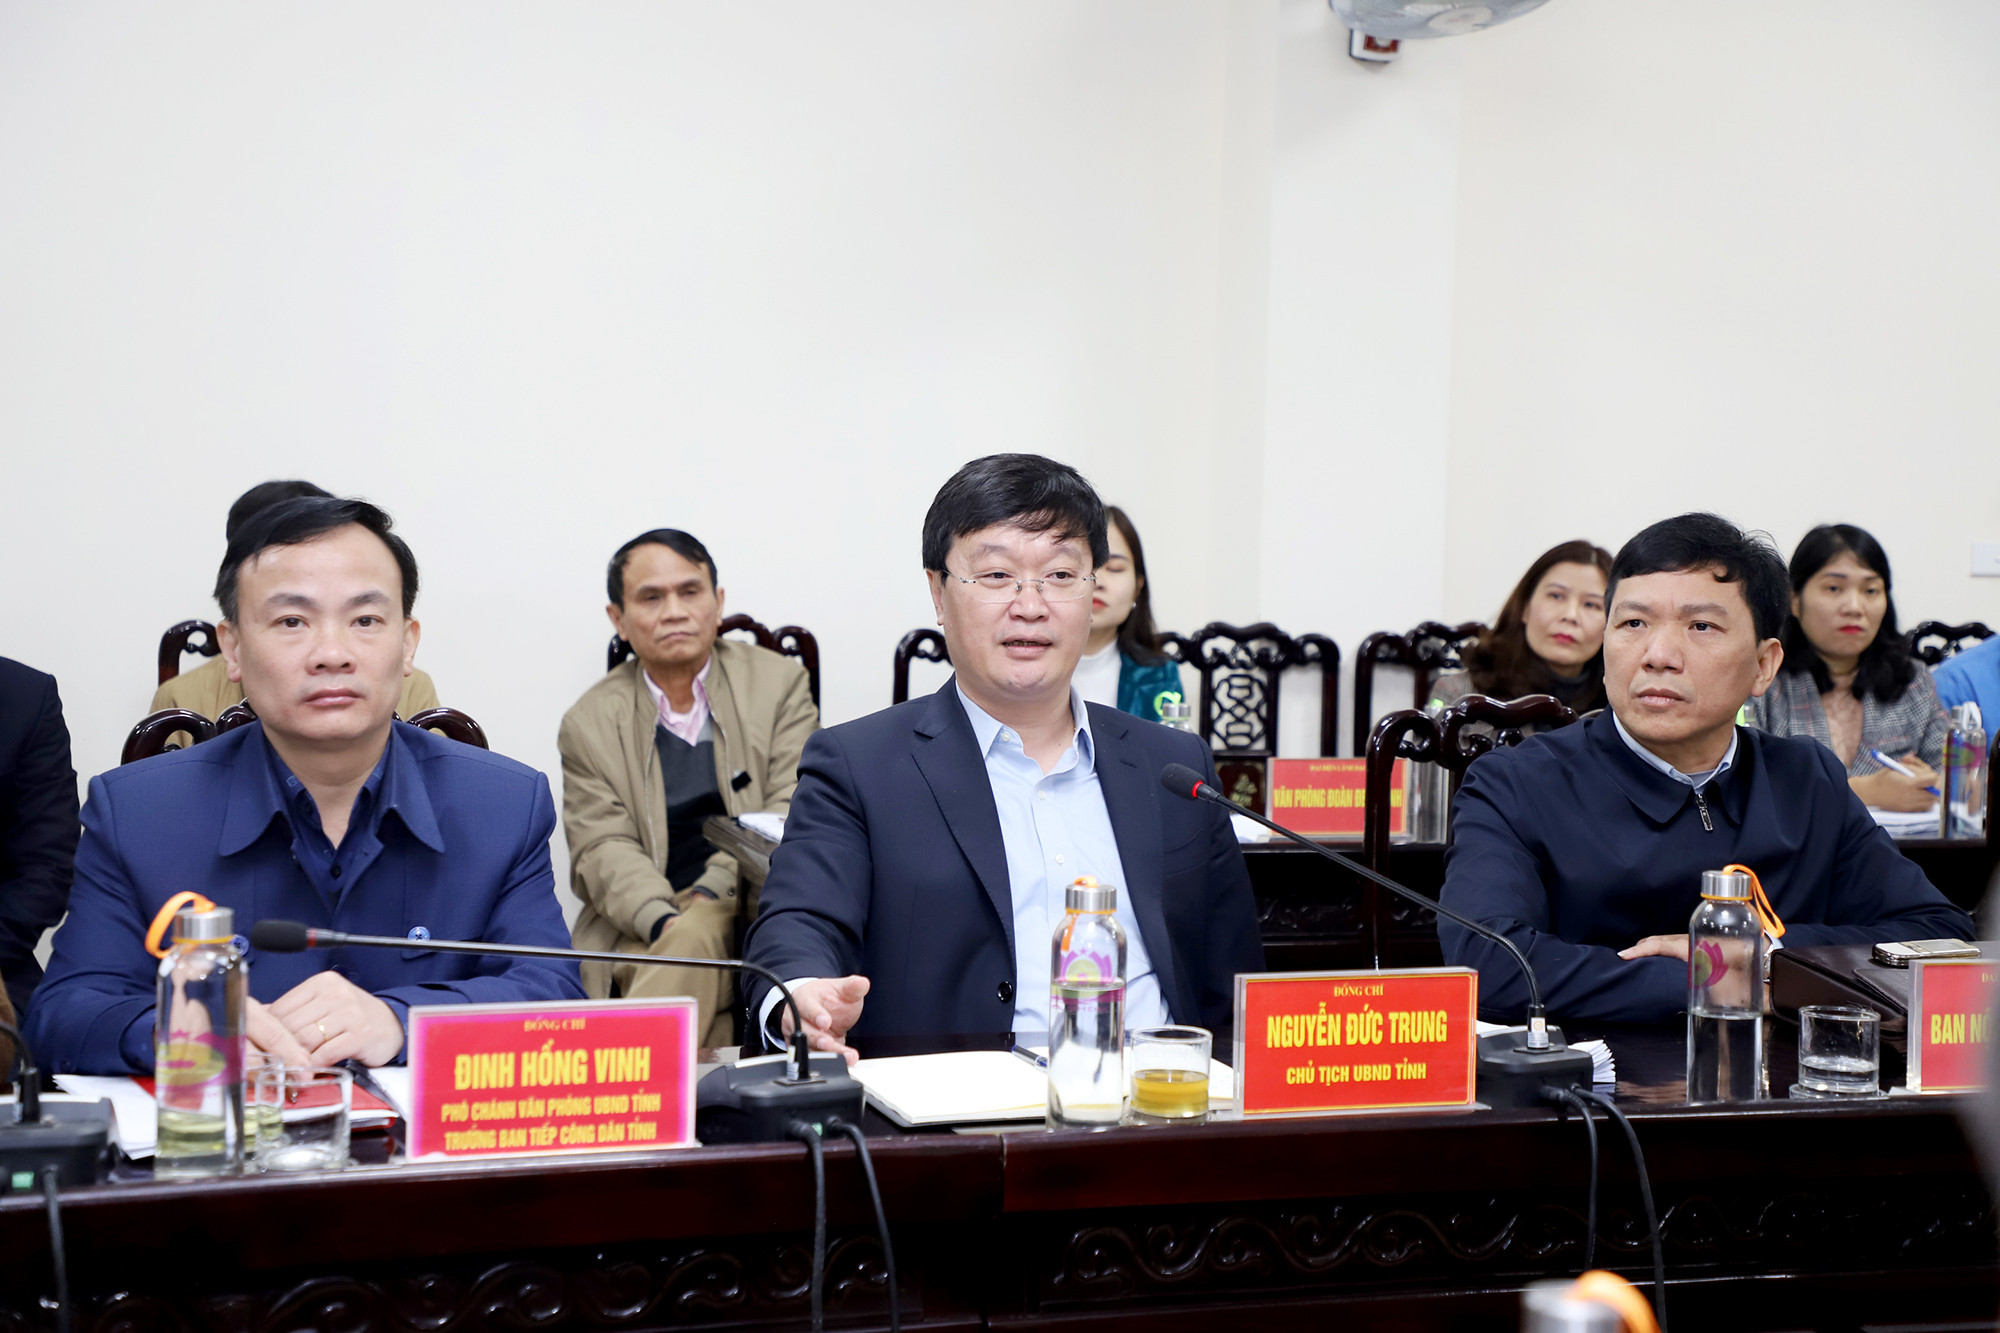 Đồng chí Nguyễn Đức Trung - Chủ tịch UBND tỉnh kết luận tại phiên tiếp công dân. Ảnh: Phạm Bằng